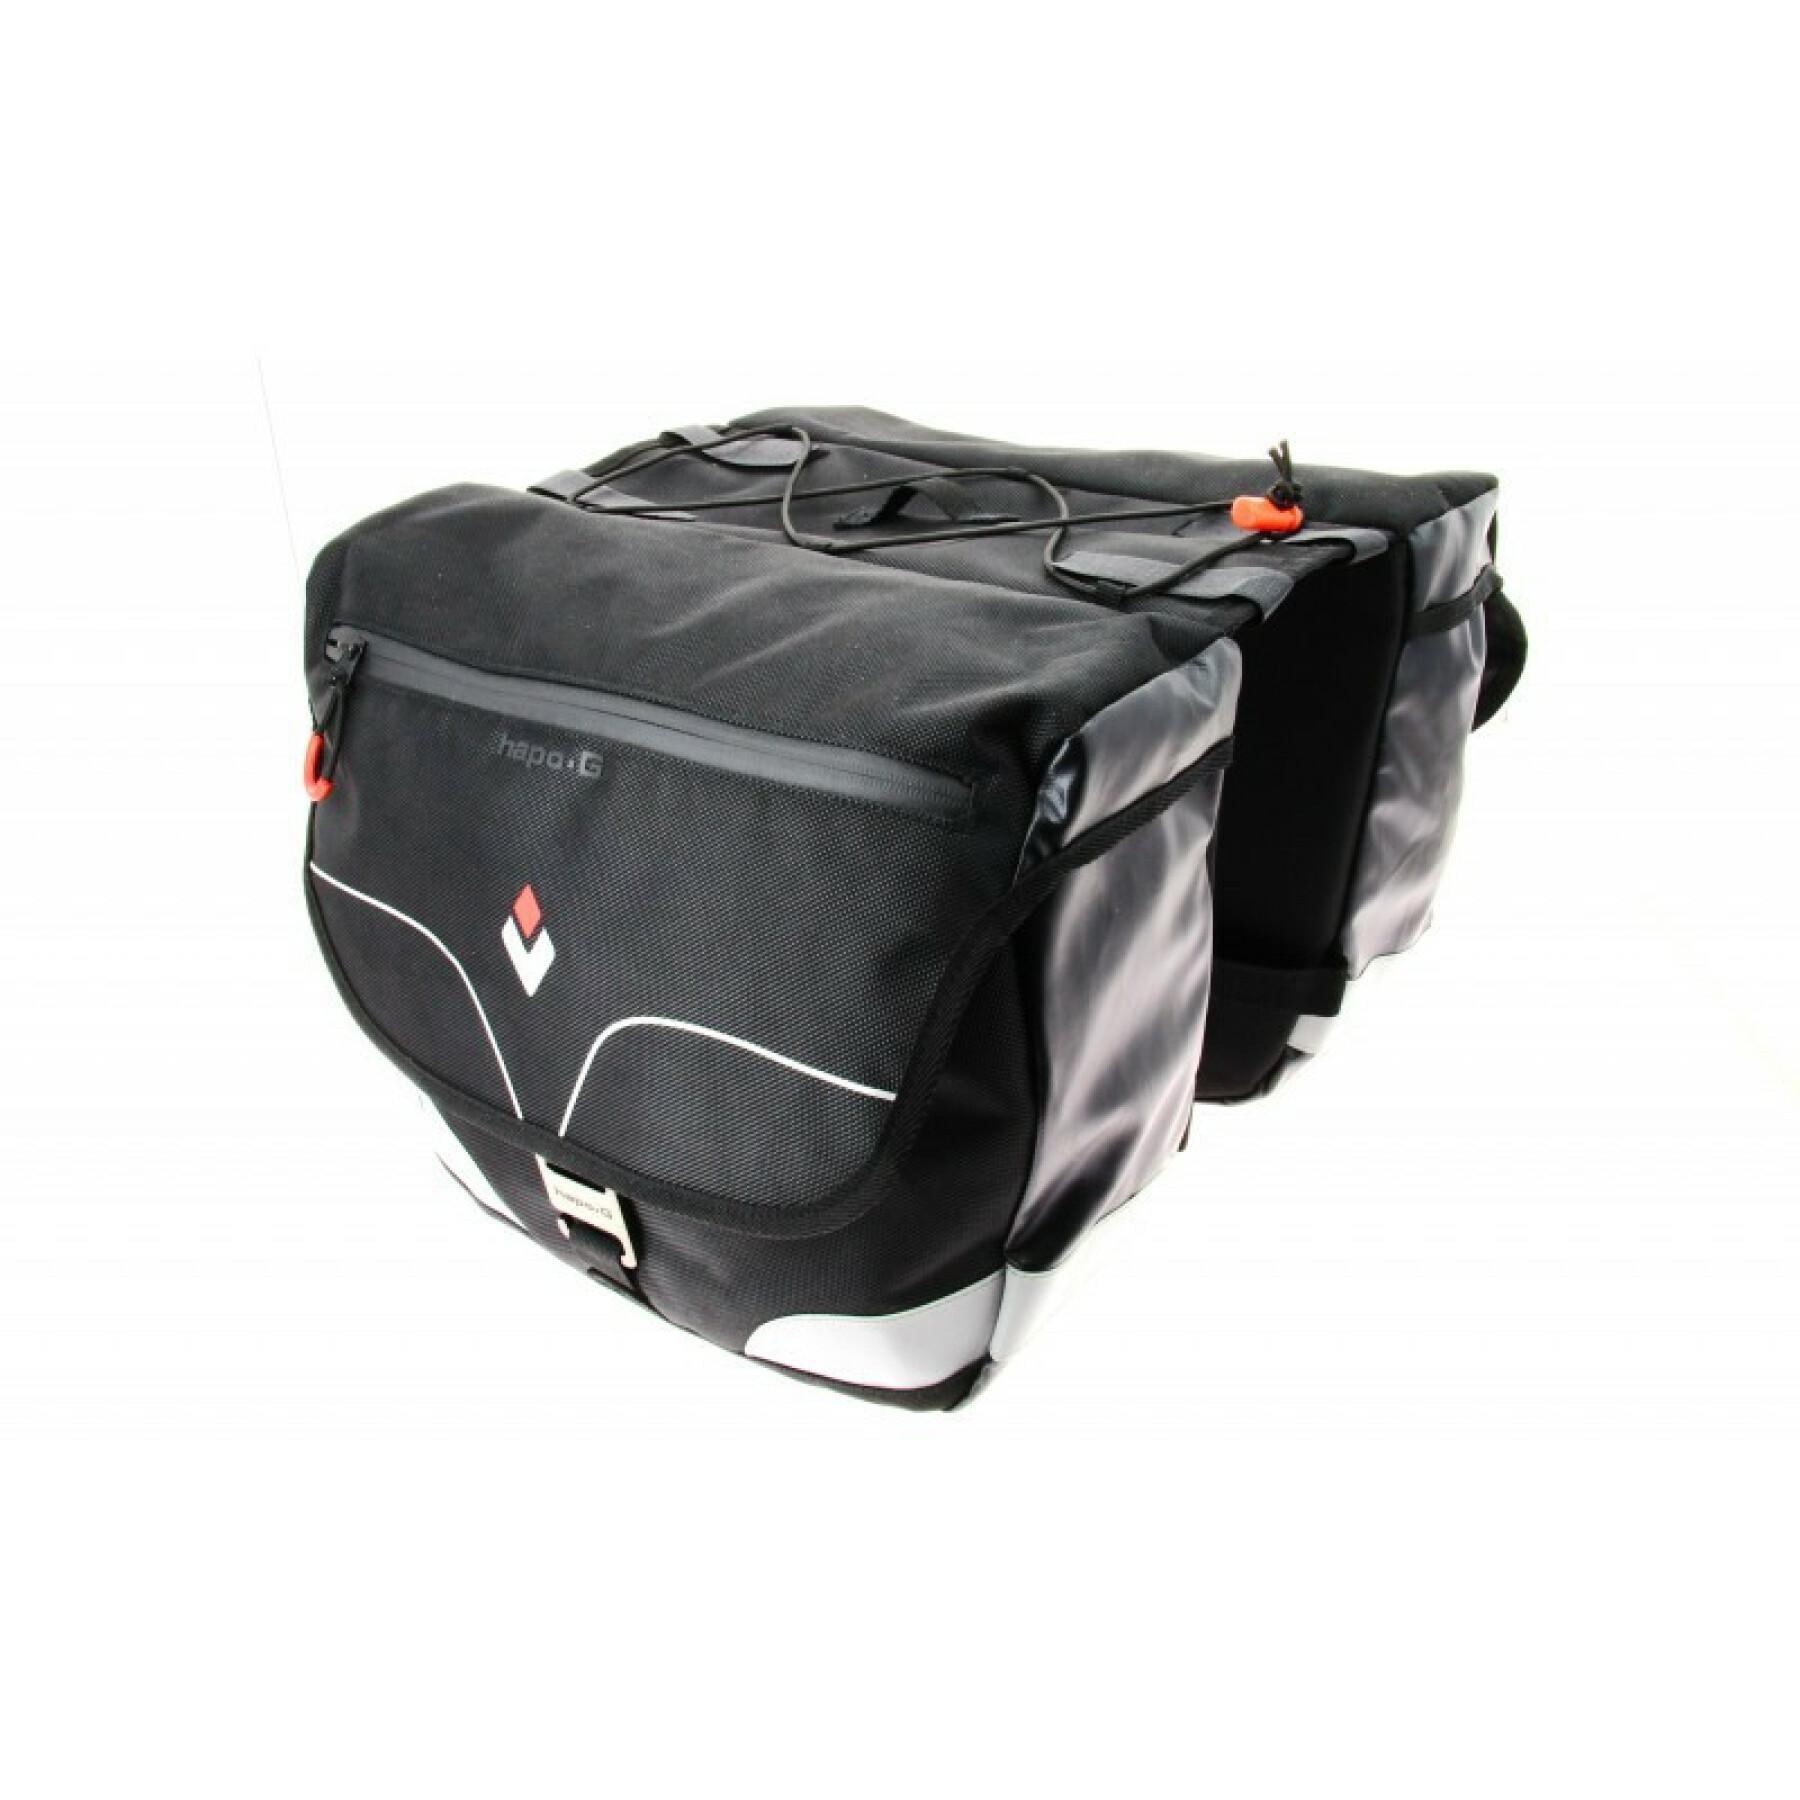 2-volume (2x12 liters) rear deck bag for children Hapo-G